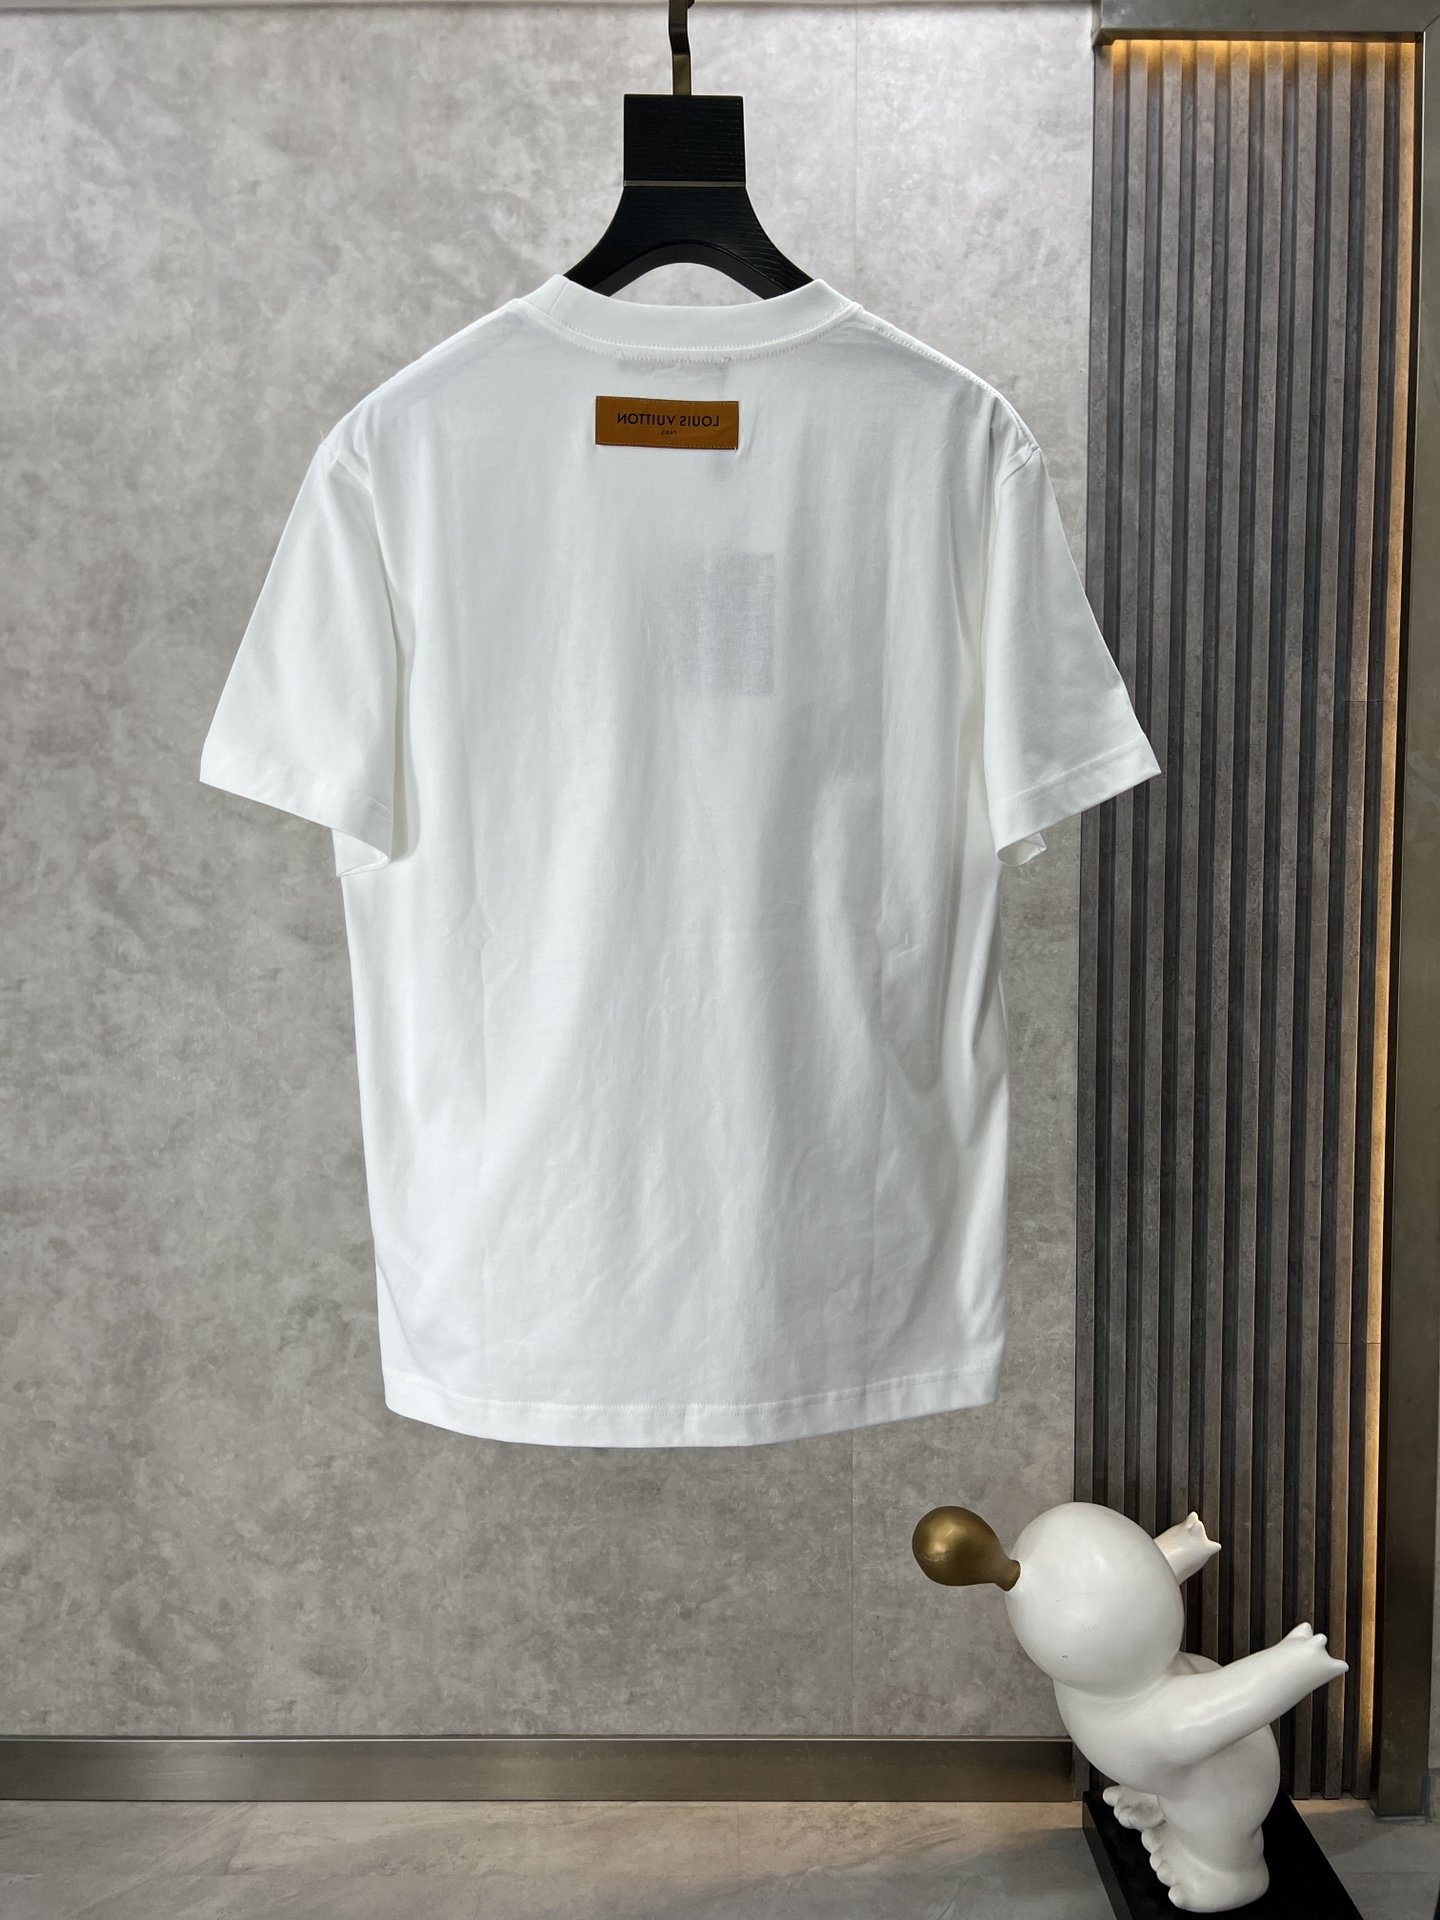 v2024Ss最新款短袖T恤原标定制面料手感柔软穿着舒适做工精细.上身效果无敌帅气L码数S-2xl